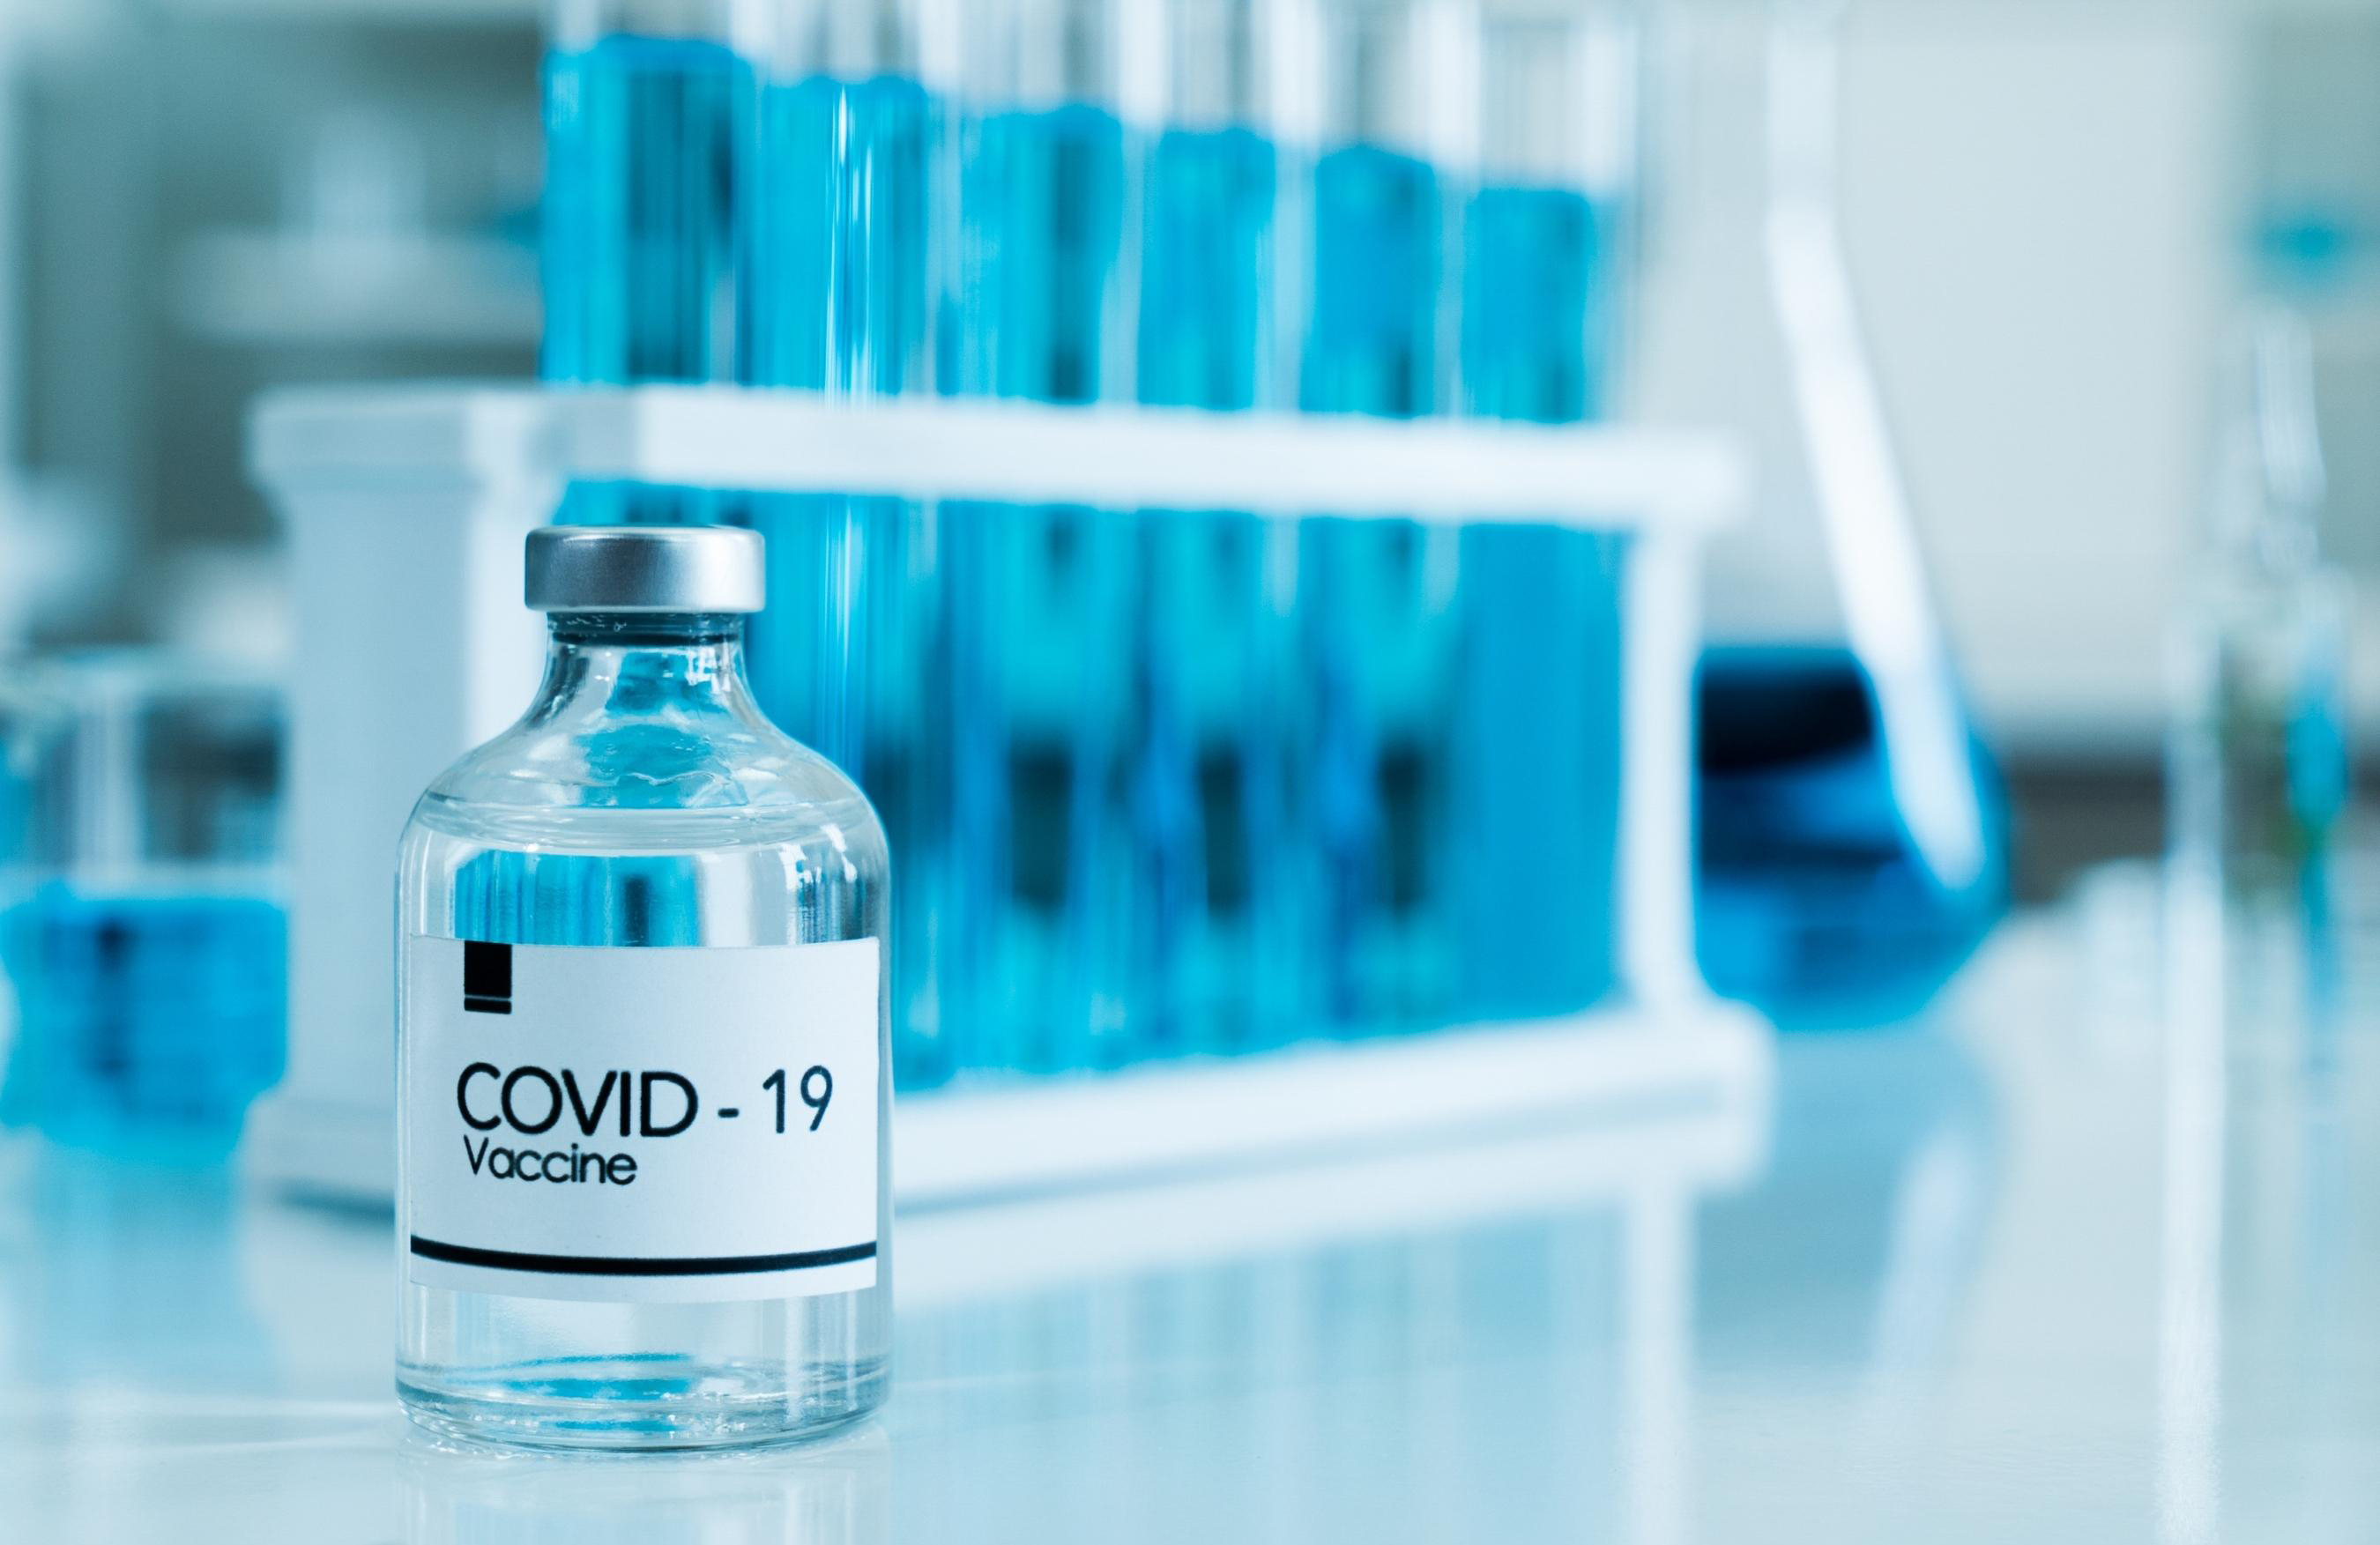 CVODI-19 Vaccine Bottle on table